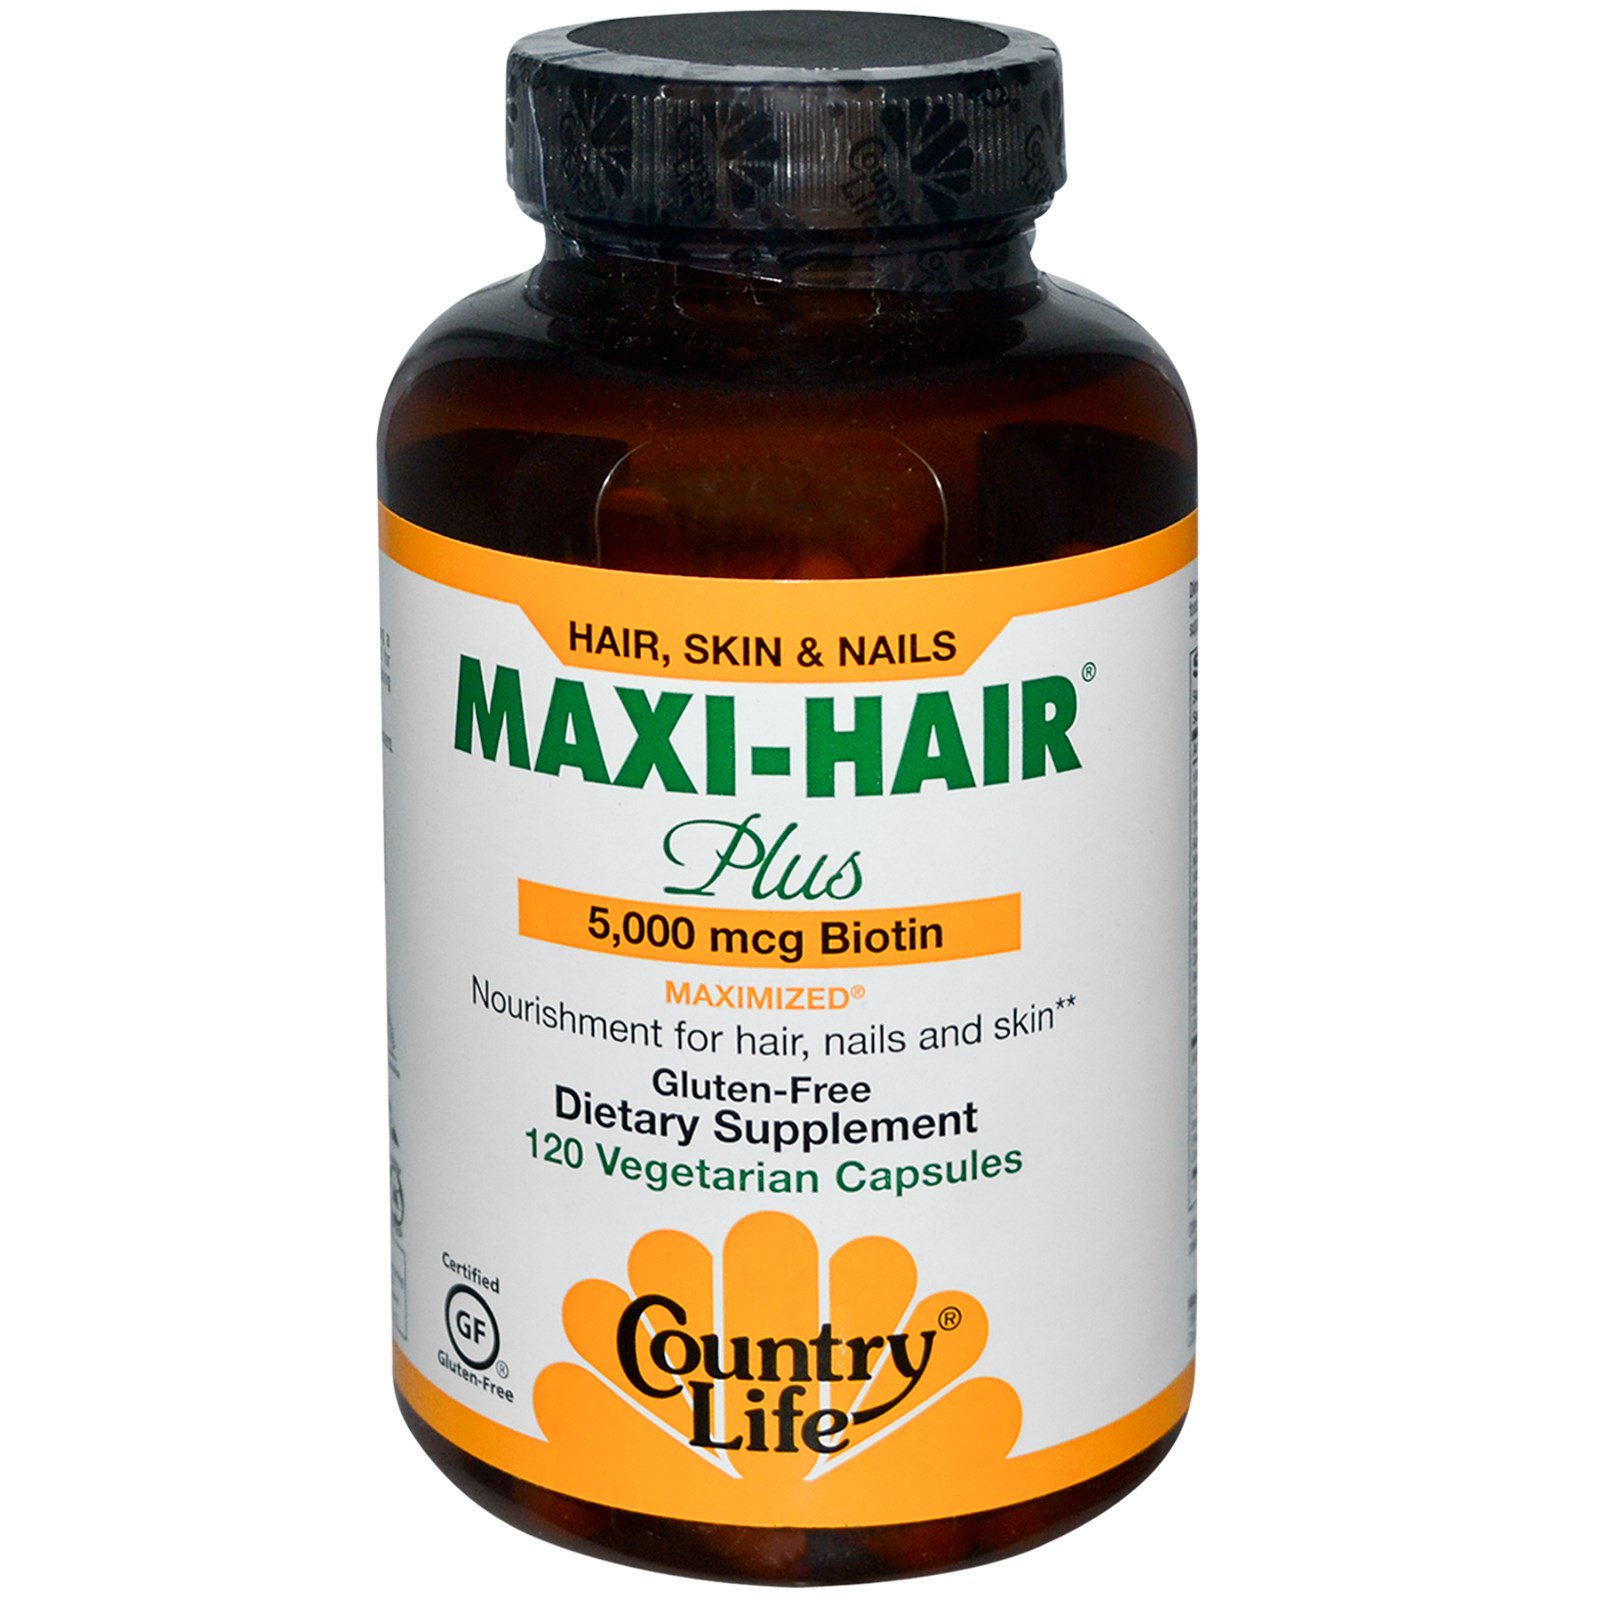 Maxi hair plus. Country Life Maxi hair Plus 5.000. Макси Хаир витамины для волос. Витамины Maxi hair Plus цвет капсулы. Картинка Country Life, Maxi-hair.